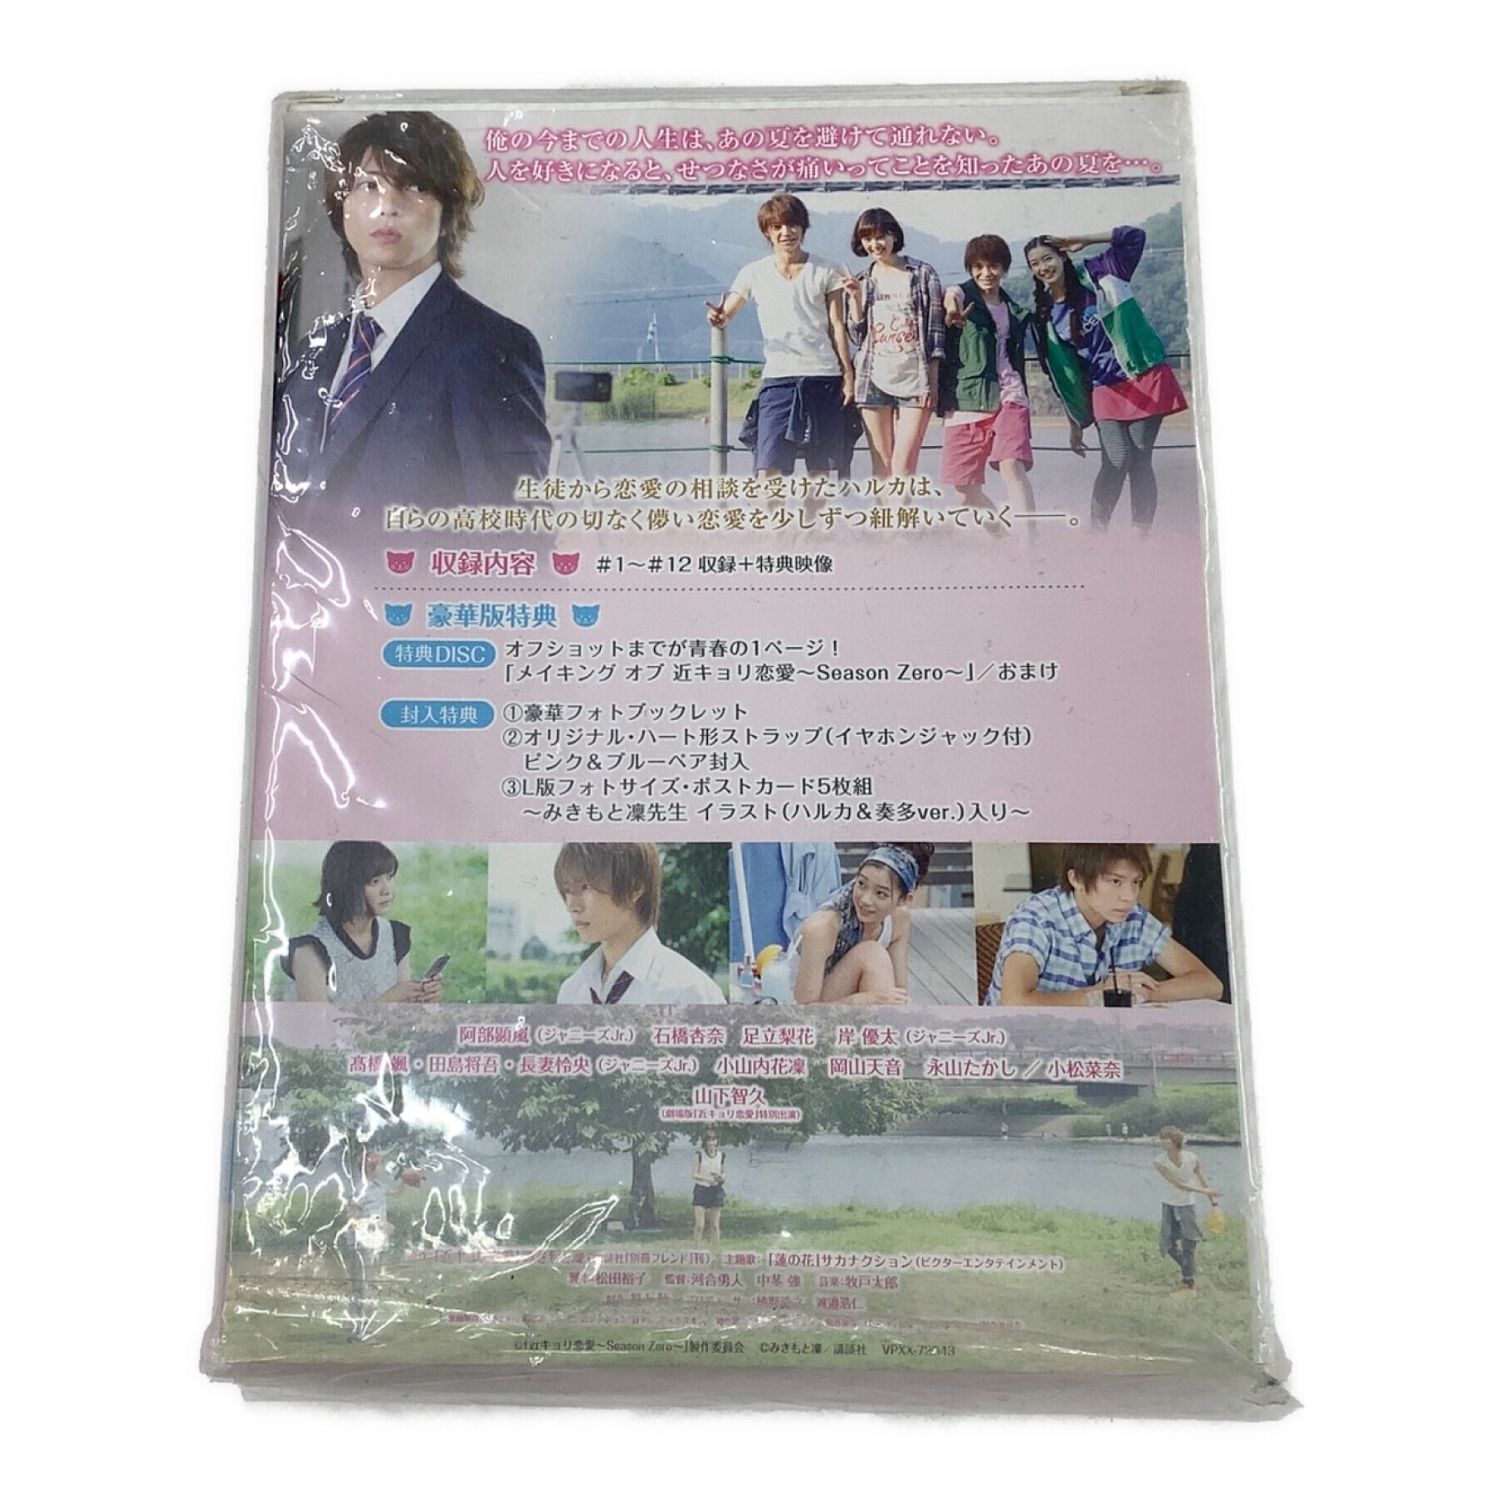 近キョリ恋愛 DVD-BOX 豪華版 初回限定生産 - TVドラマ